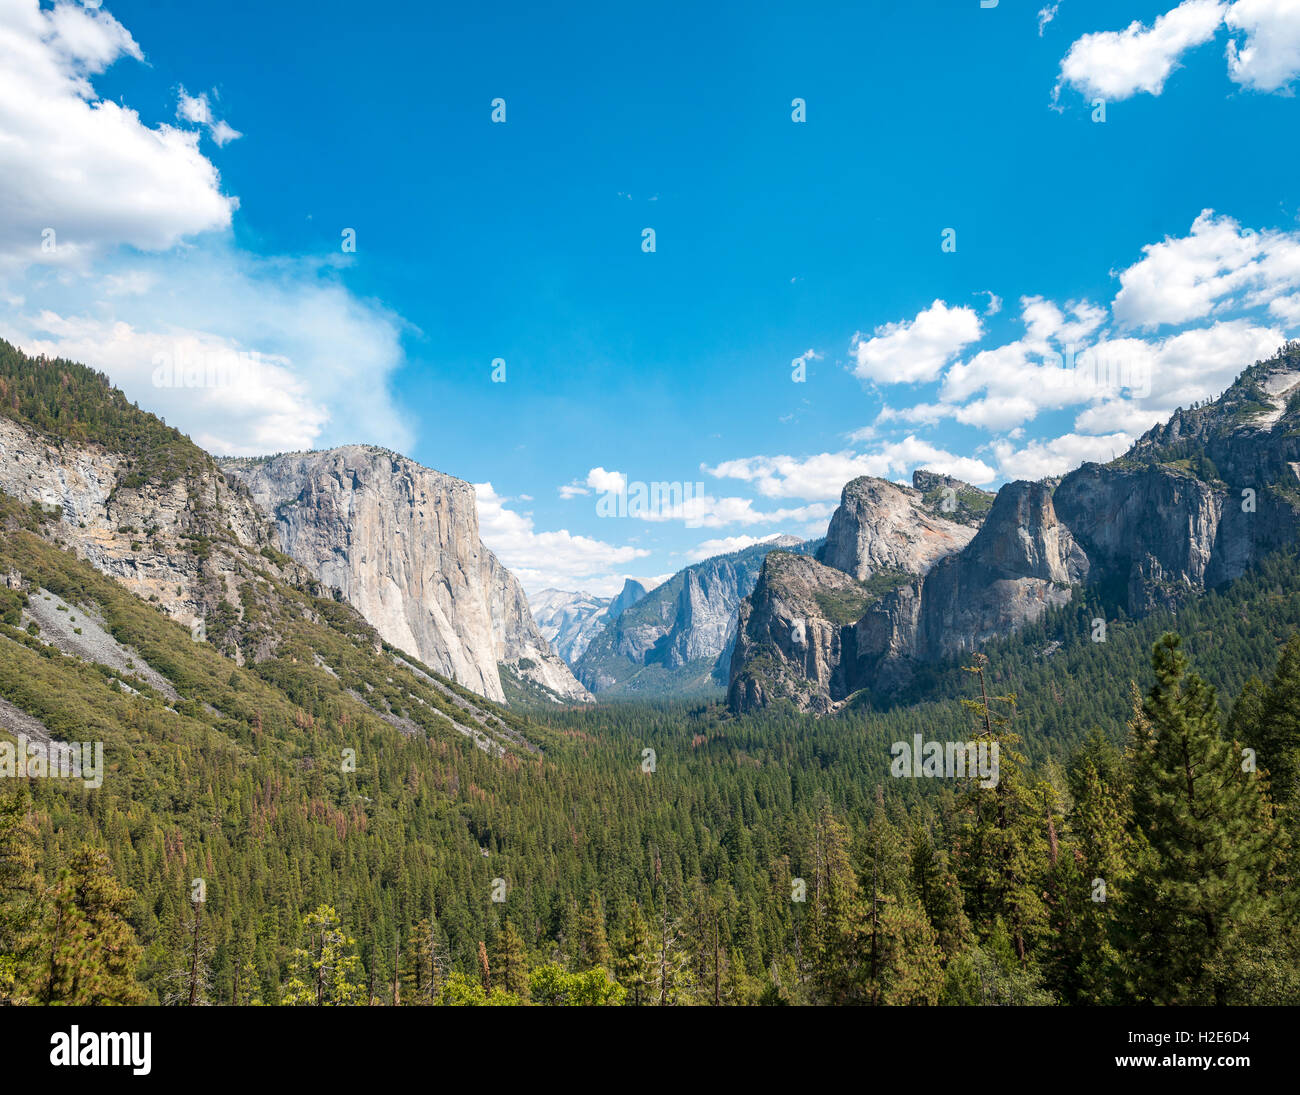 Vista de túnel, vistas al valle de Yosemite, El Capitan, el Parque Nacional Yosemite, California, EE.UU. Foto de stock